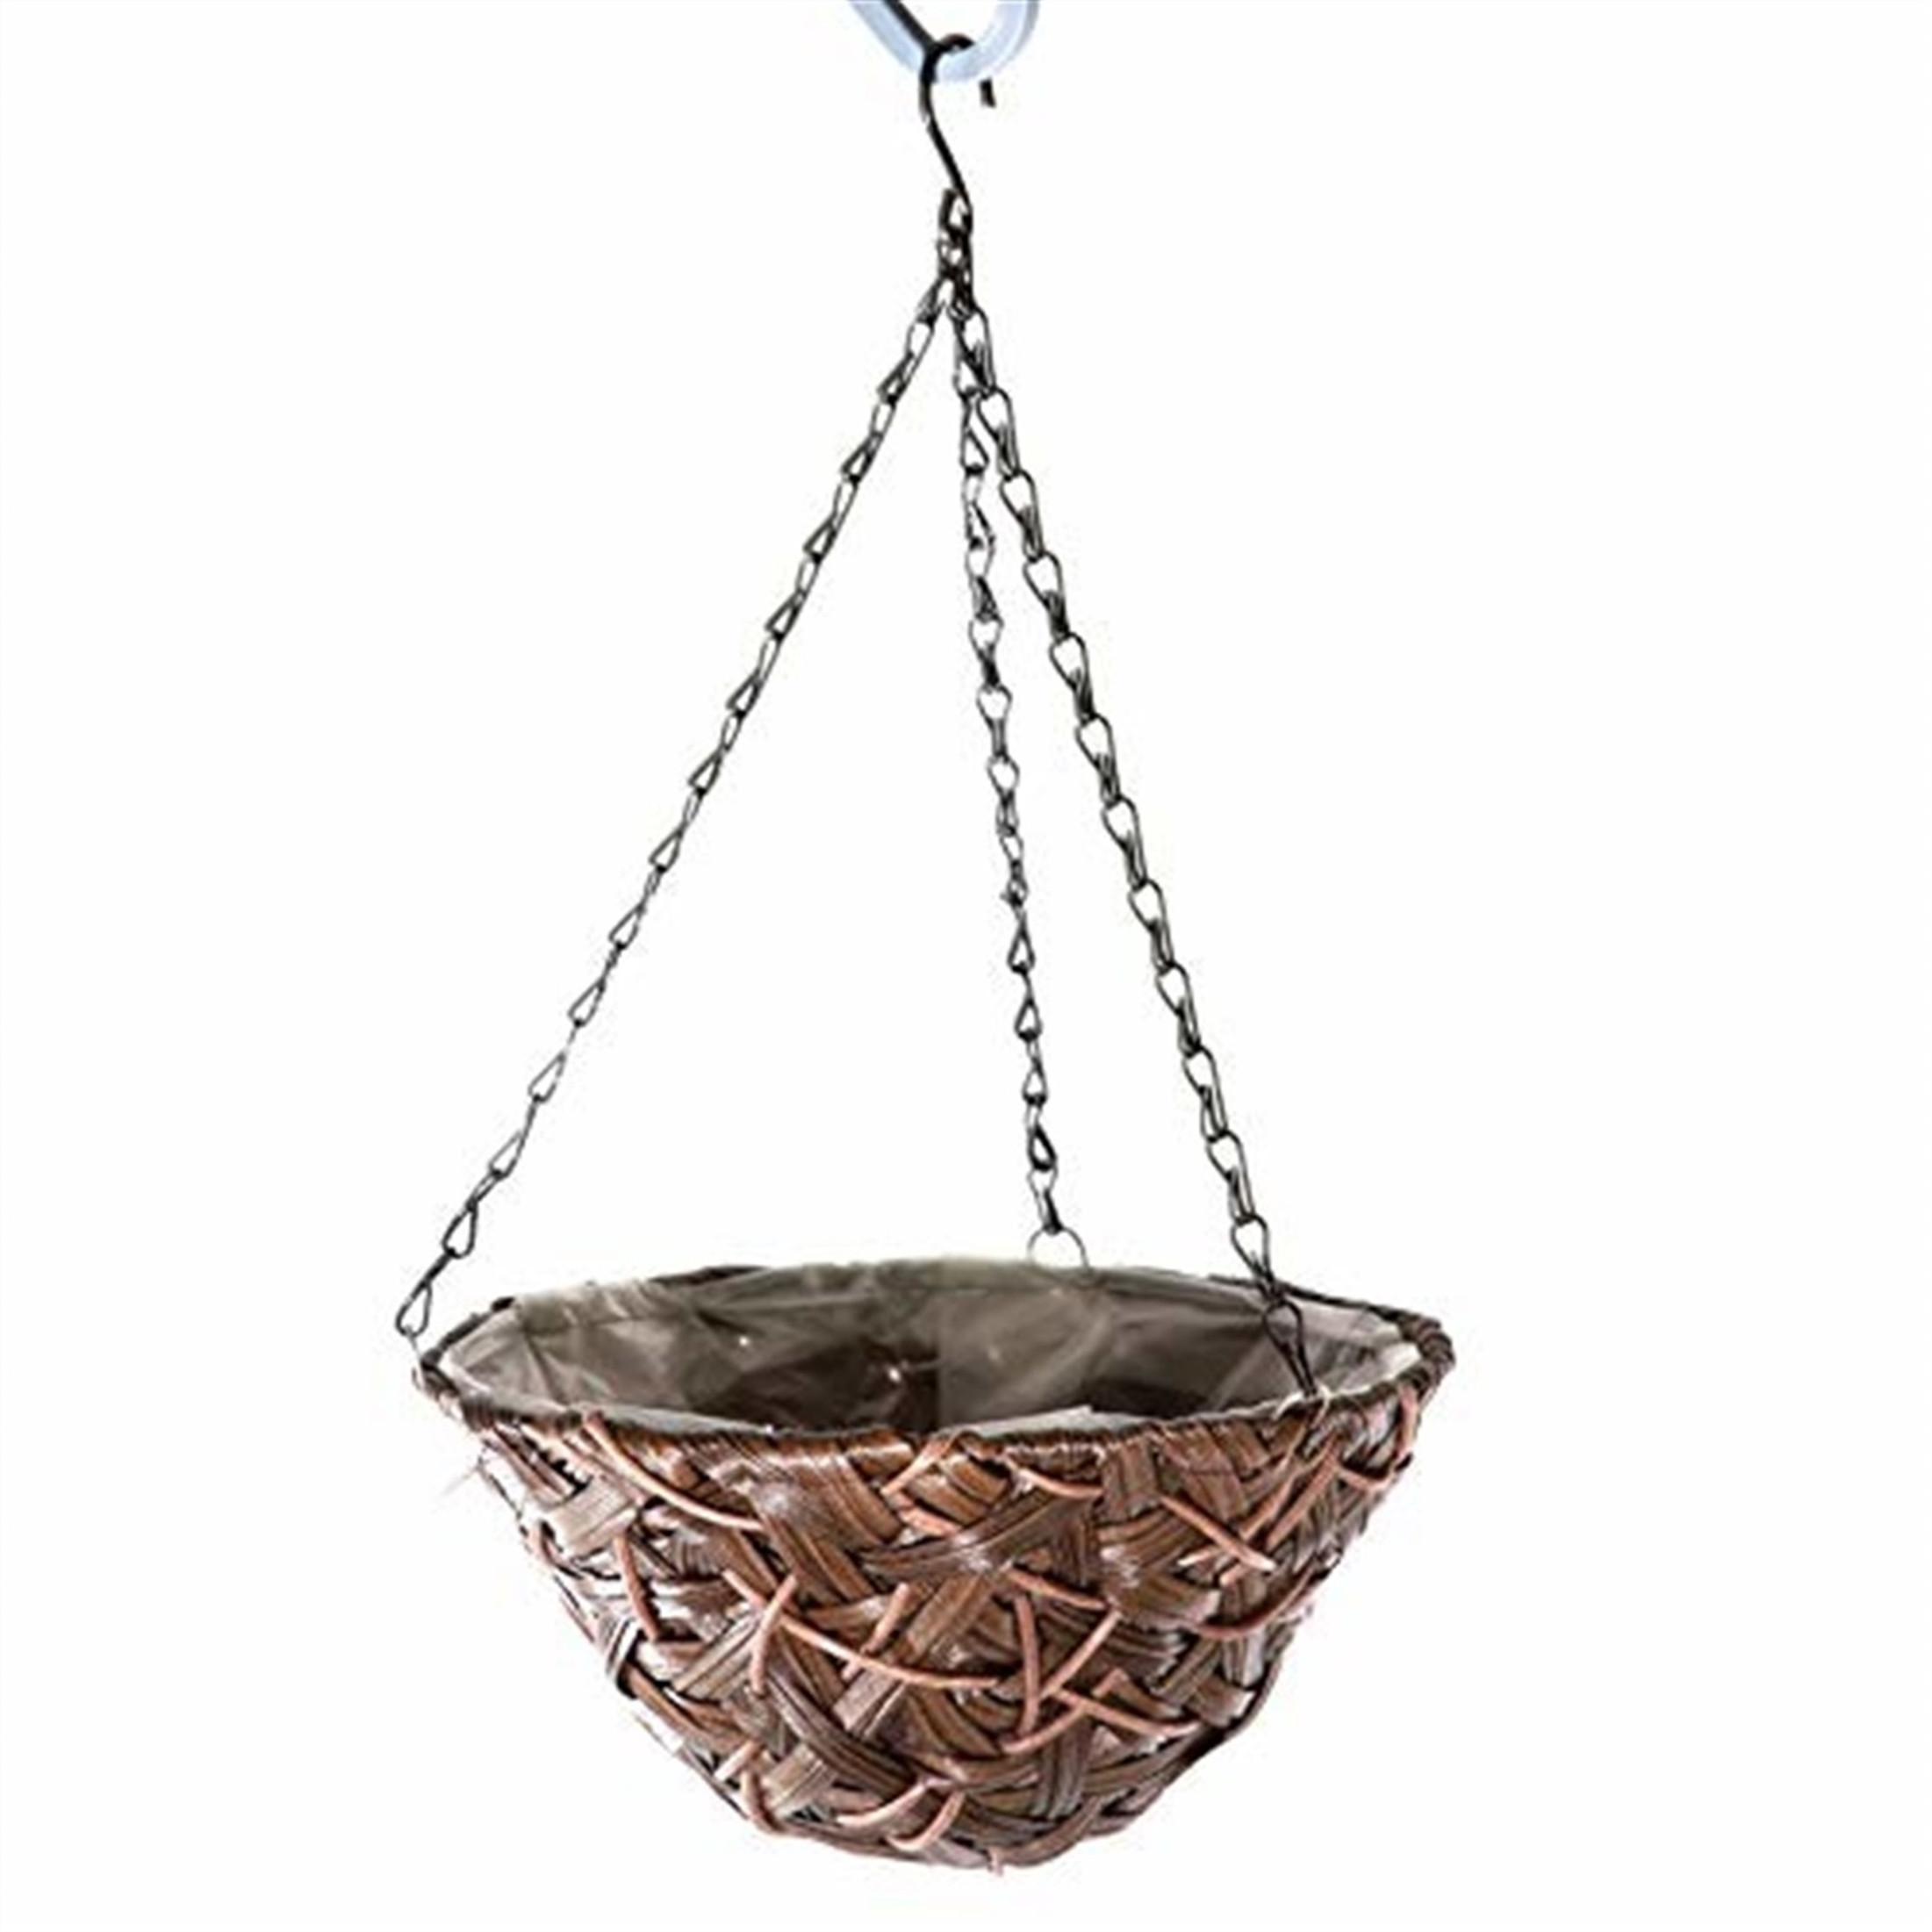 Gardener's Select  Round Woven Plastic Wicker Hanging Basket, Brown